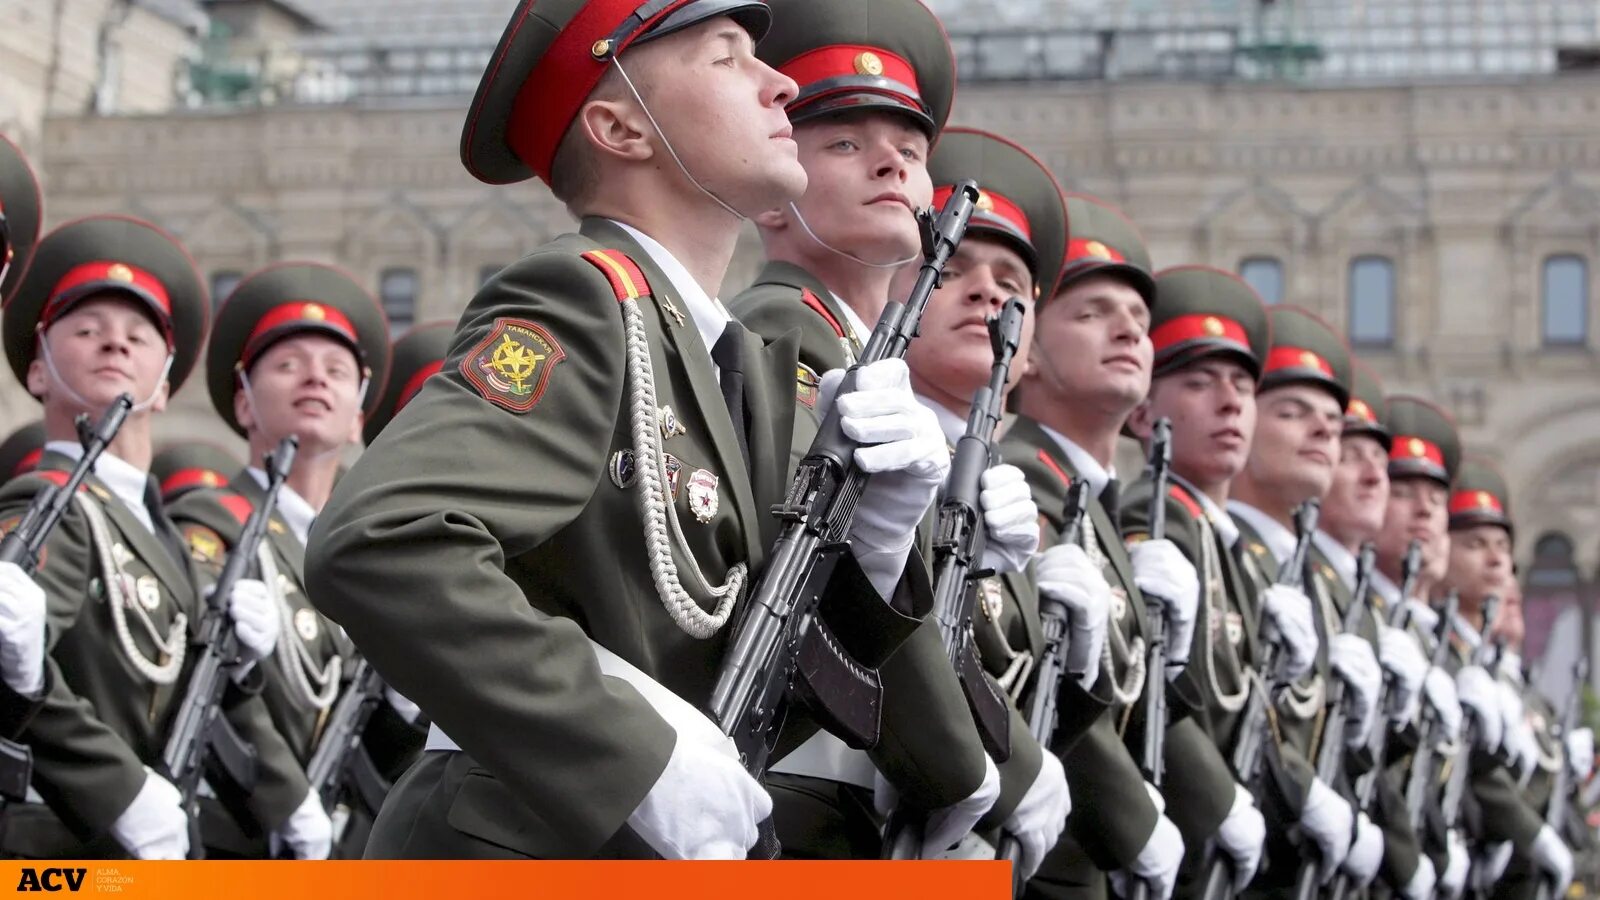 Солдаты на параде. Российский солдат на параде. Русские солдаты на параде. Современный солдат России.